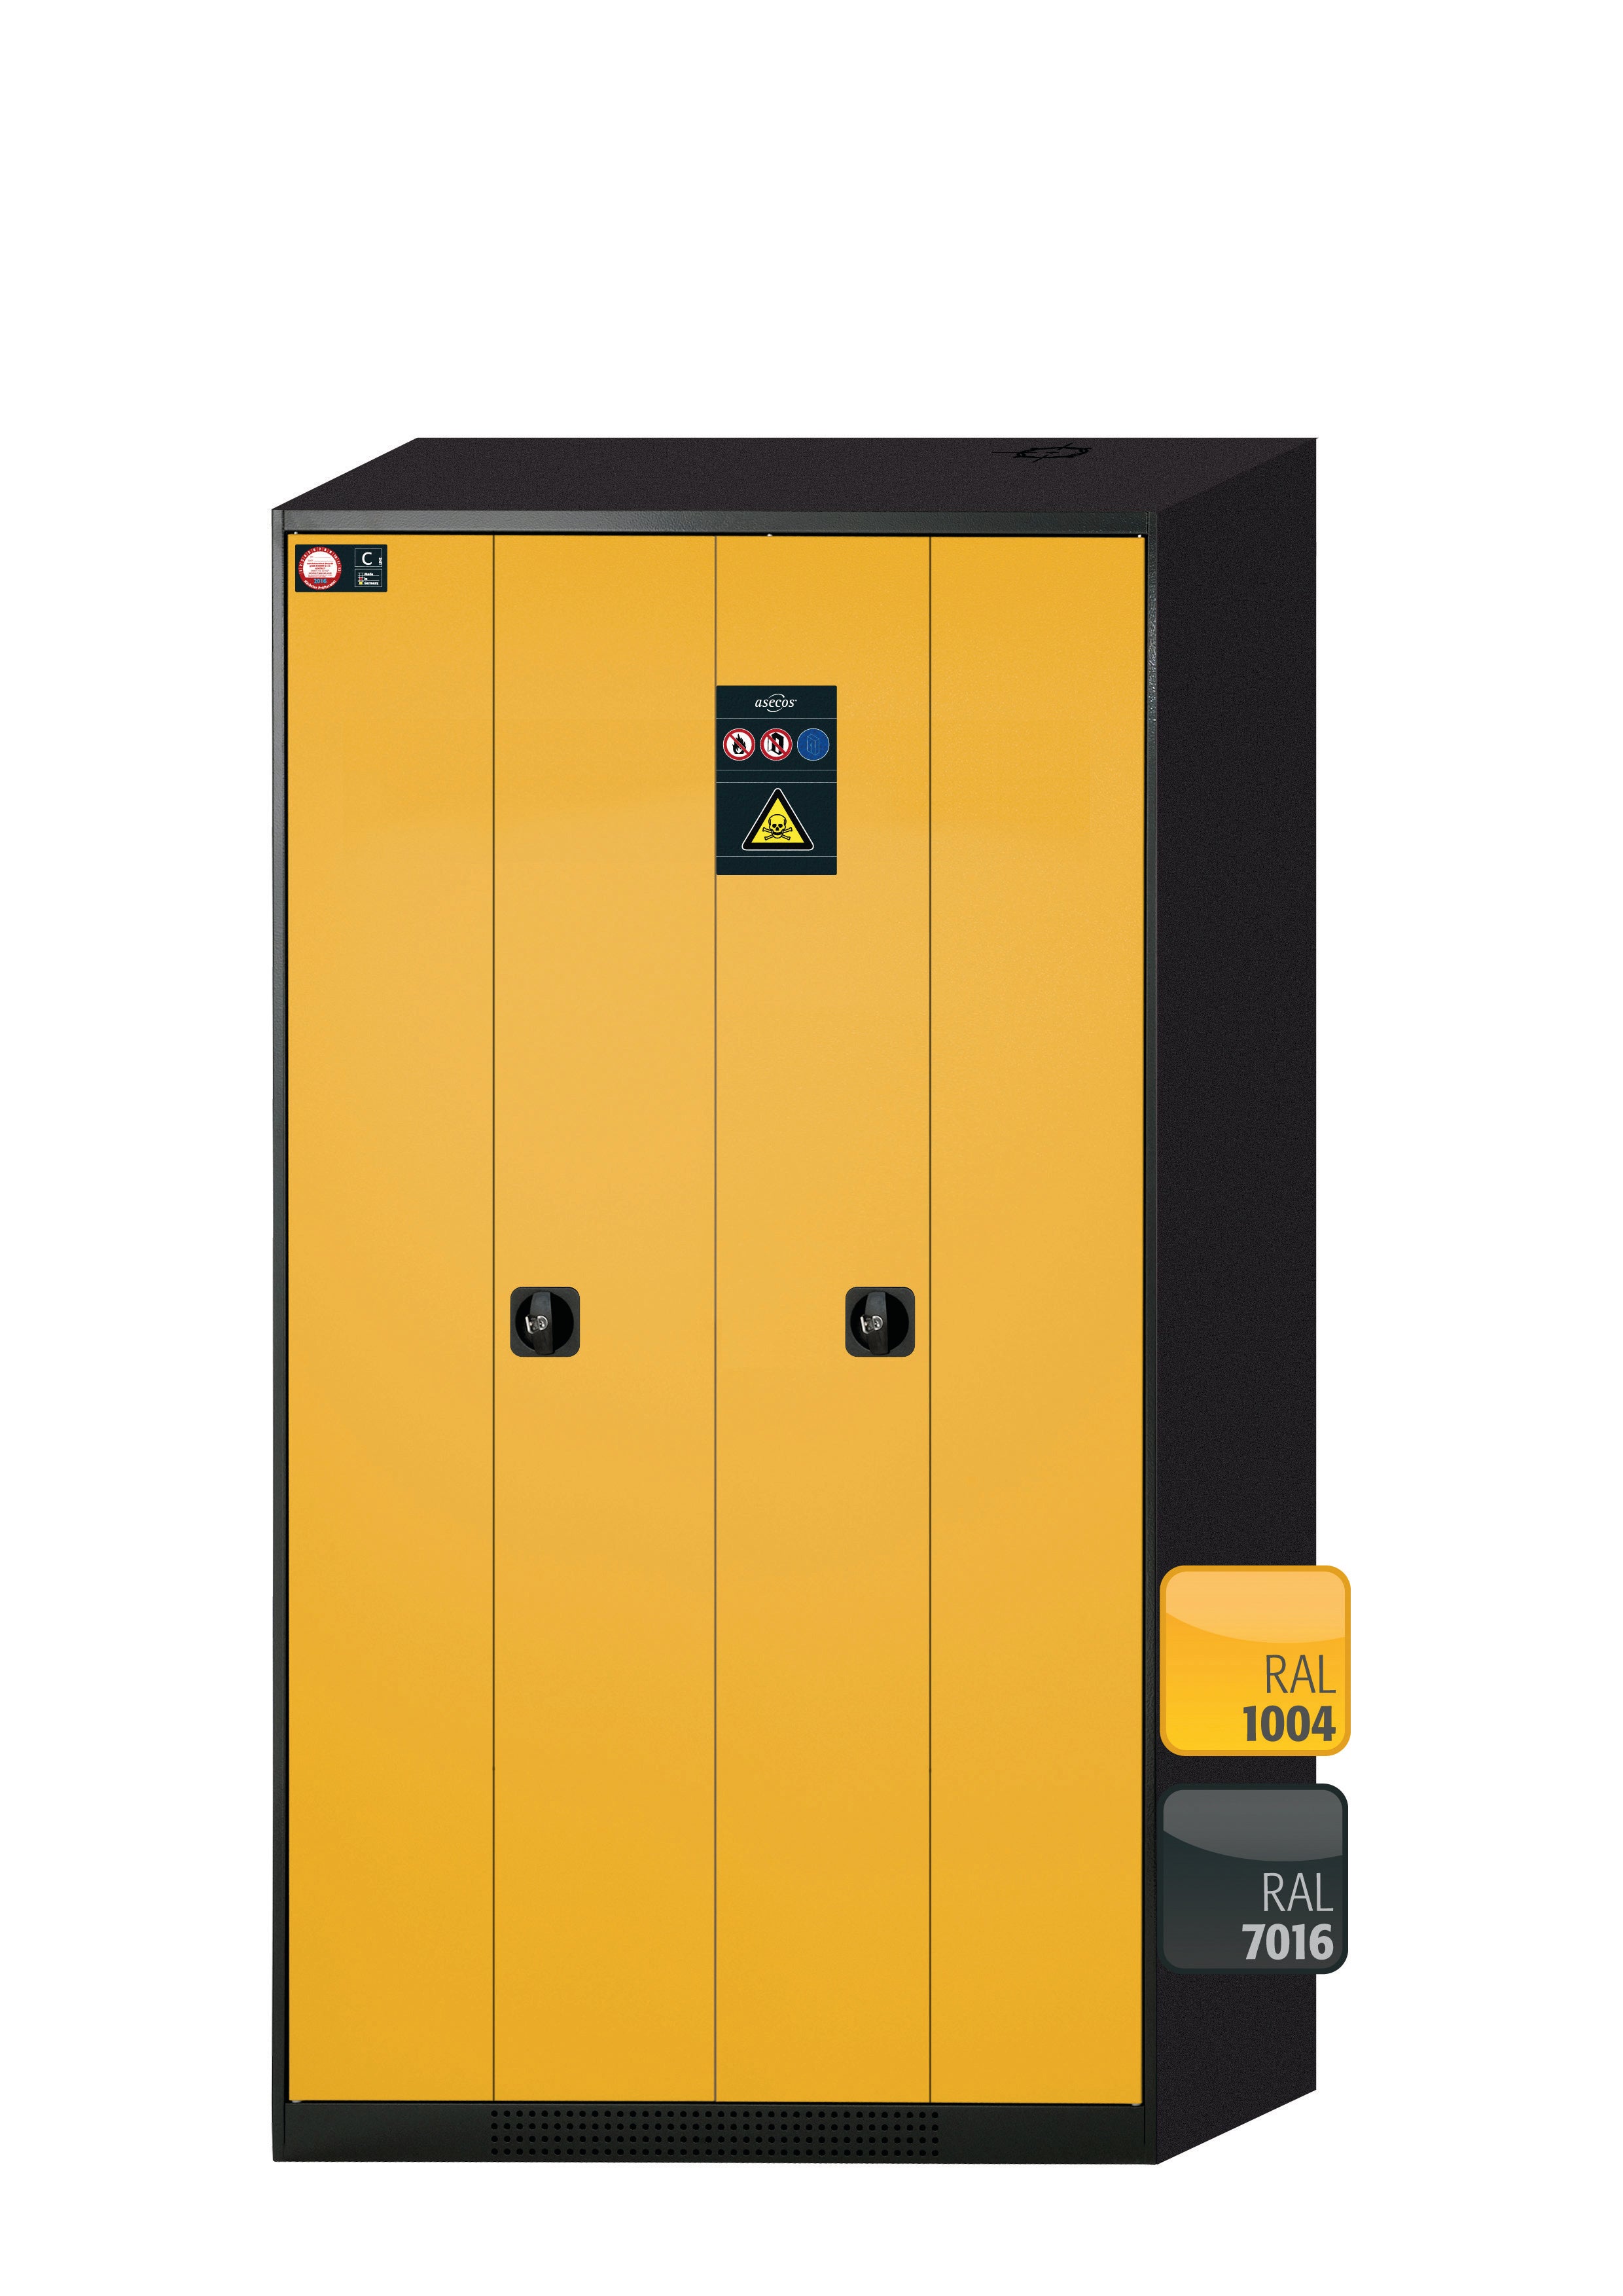 Armoire chimique CS-PHOENIX modèle CS.195.105.FD en jaune sécurité RAL 1004 avec 6 étagères coulissantes AbZ (tôle d'acier/polypropylène)